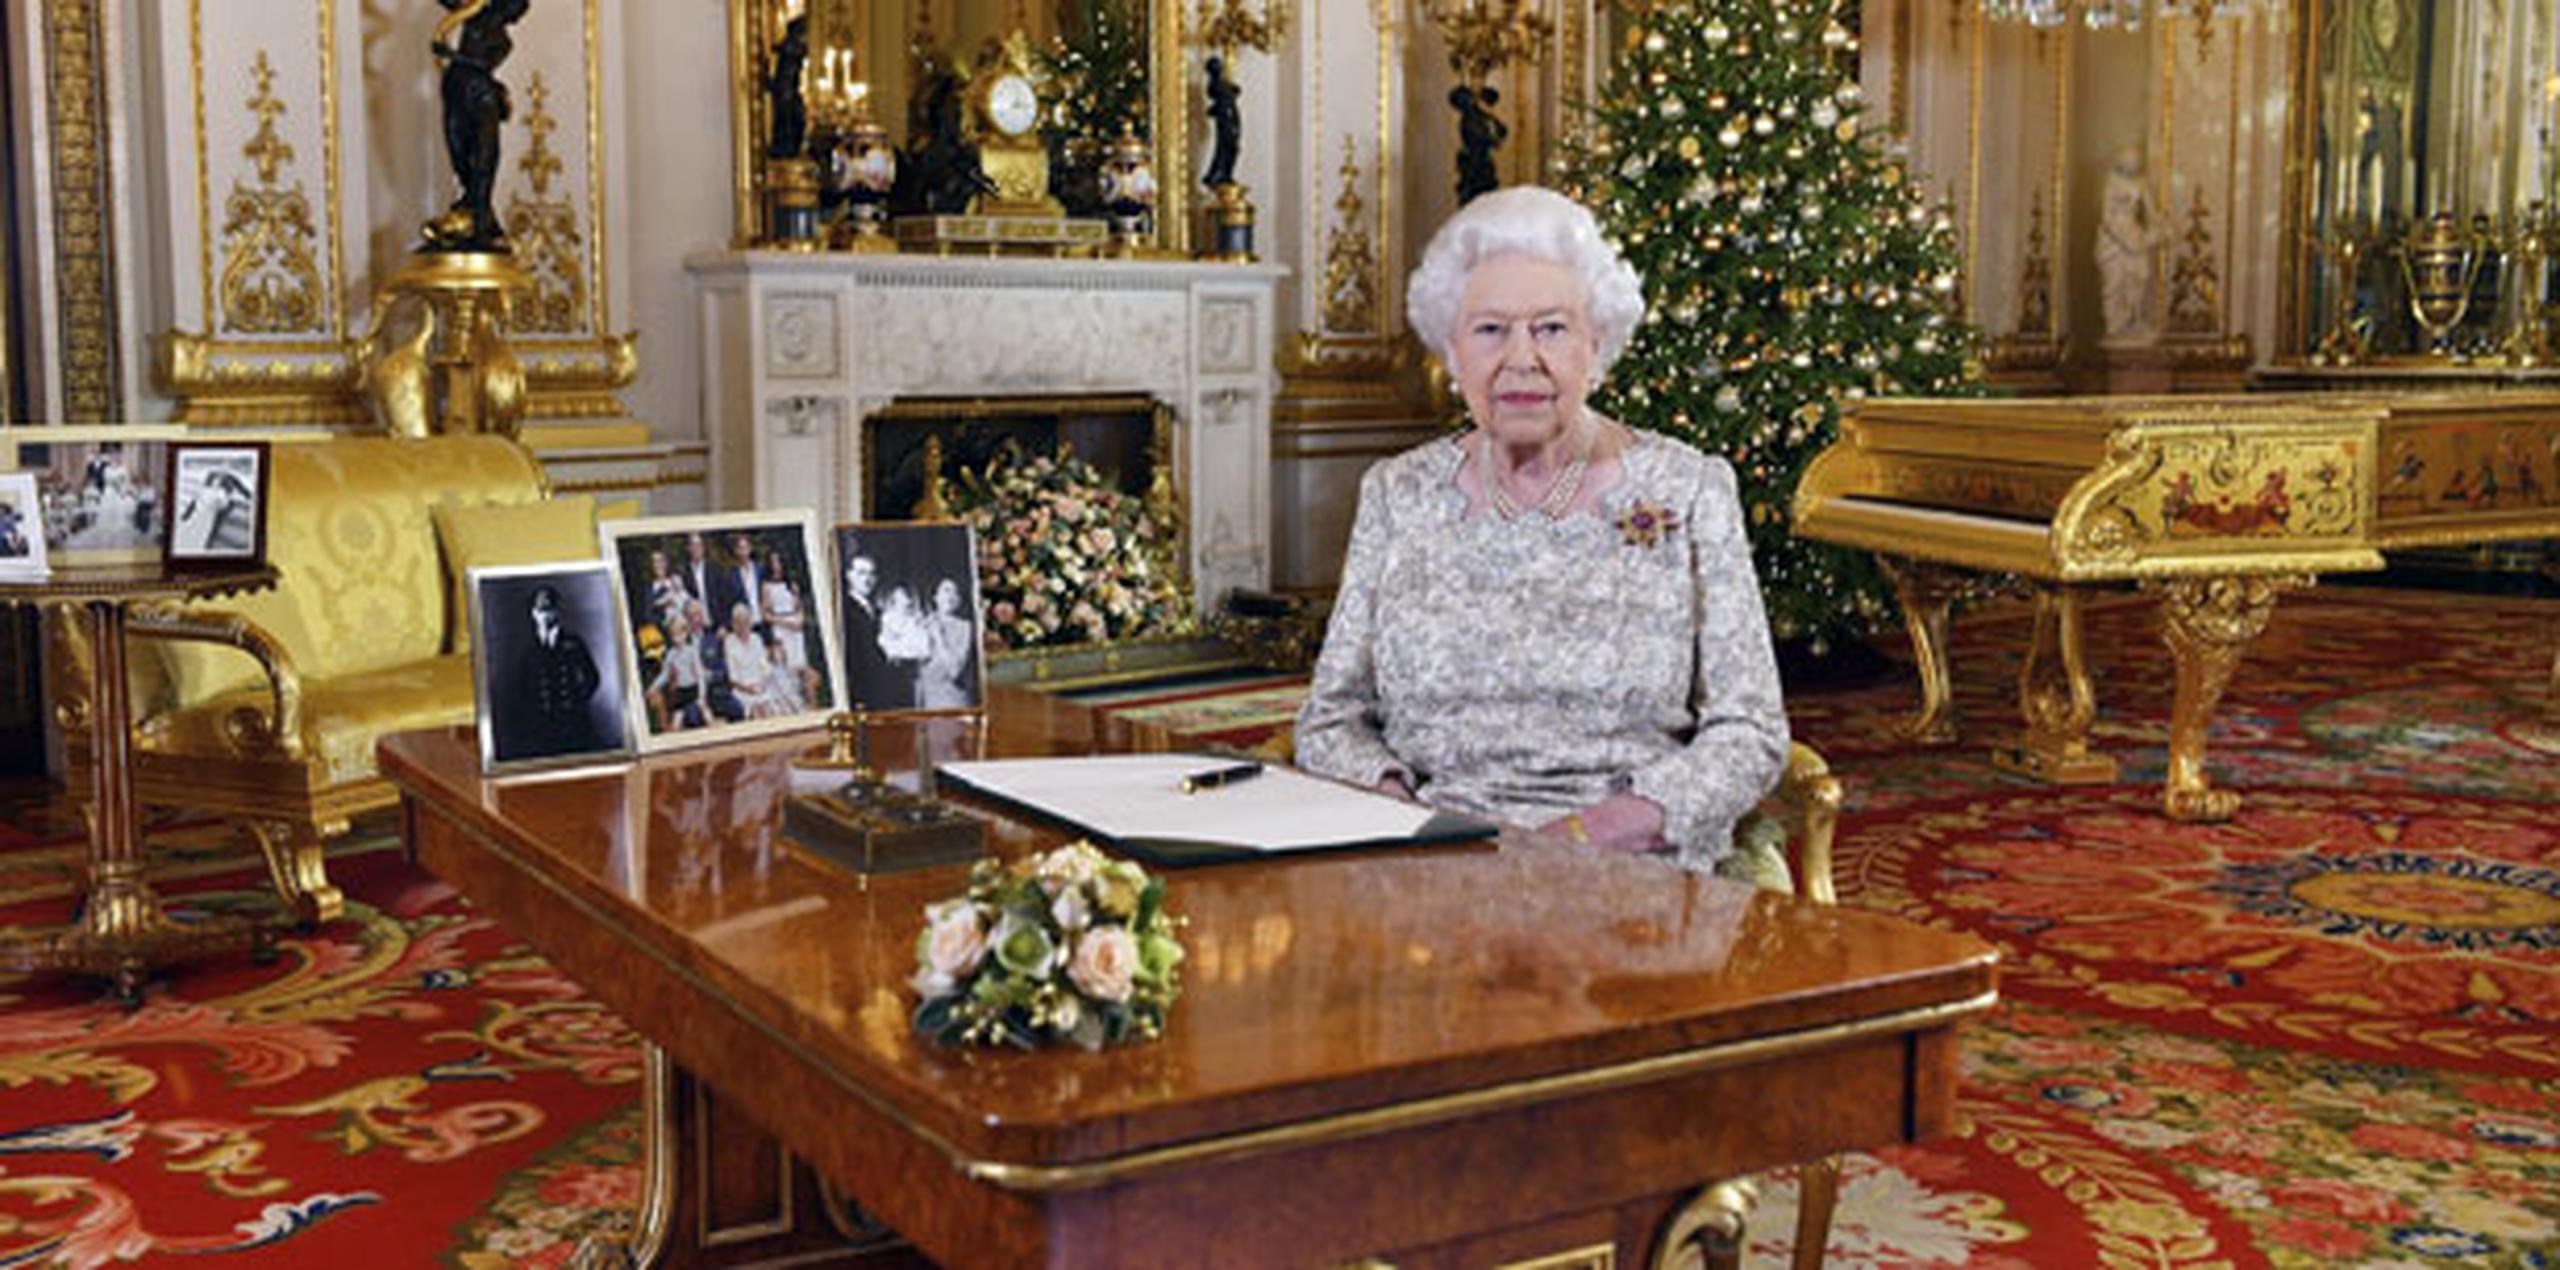 En una nota más ligera, la reina señaló que 2018 fue un año muy ocupado para su familia: dos bodas, dos bebés y otro para el próximo año. "Ayuda mantener a la abuela bien ocupada”, dijo. (AP)